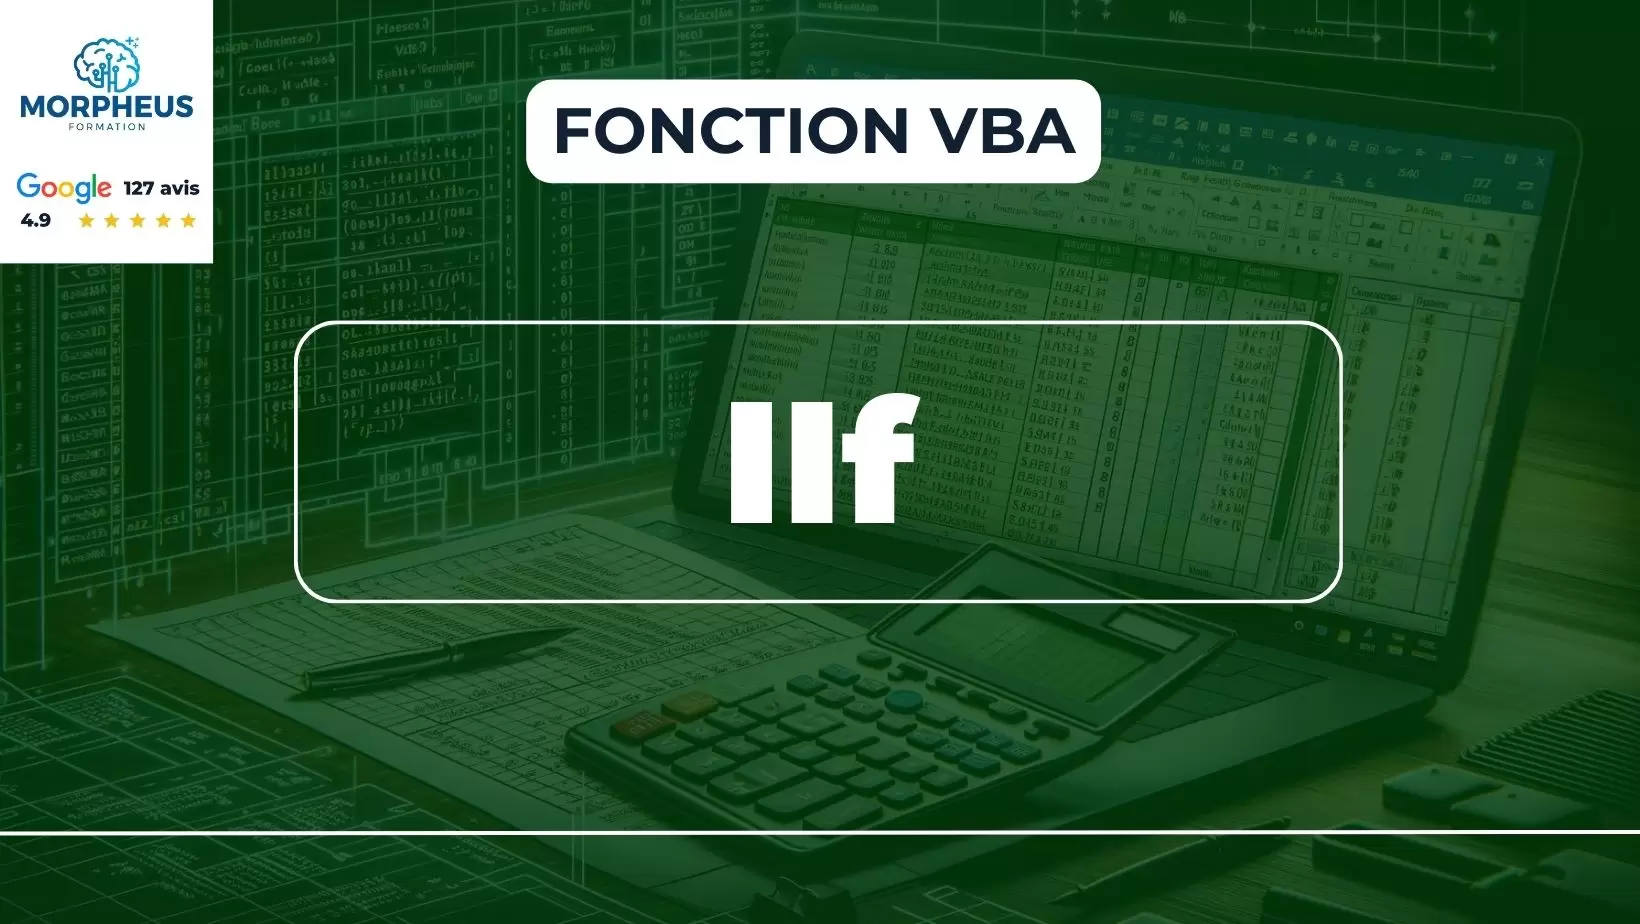 Fonction IIf Excel